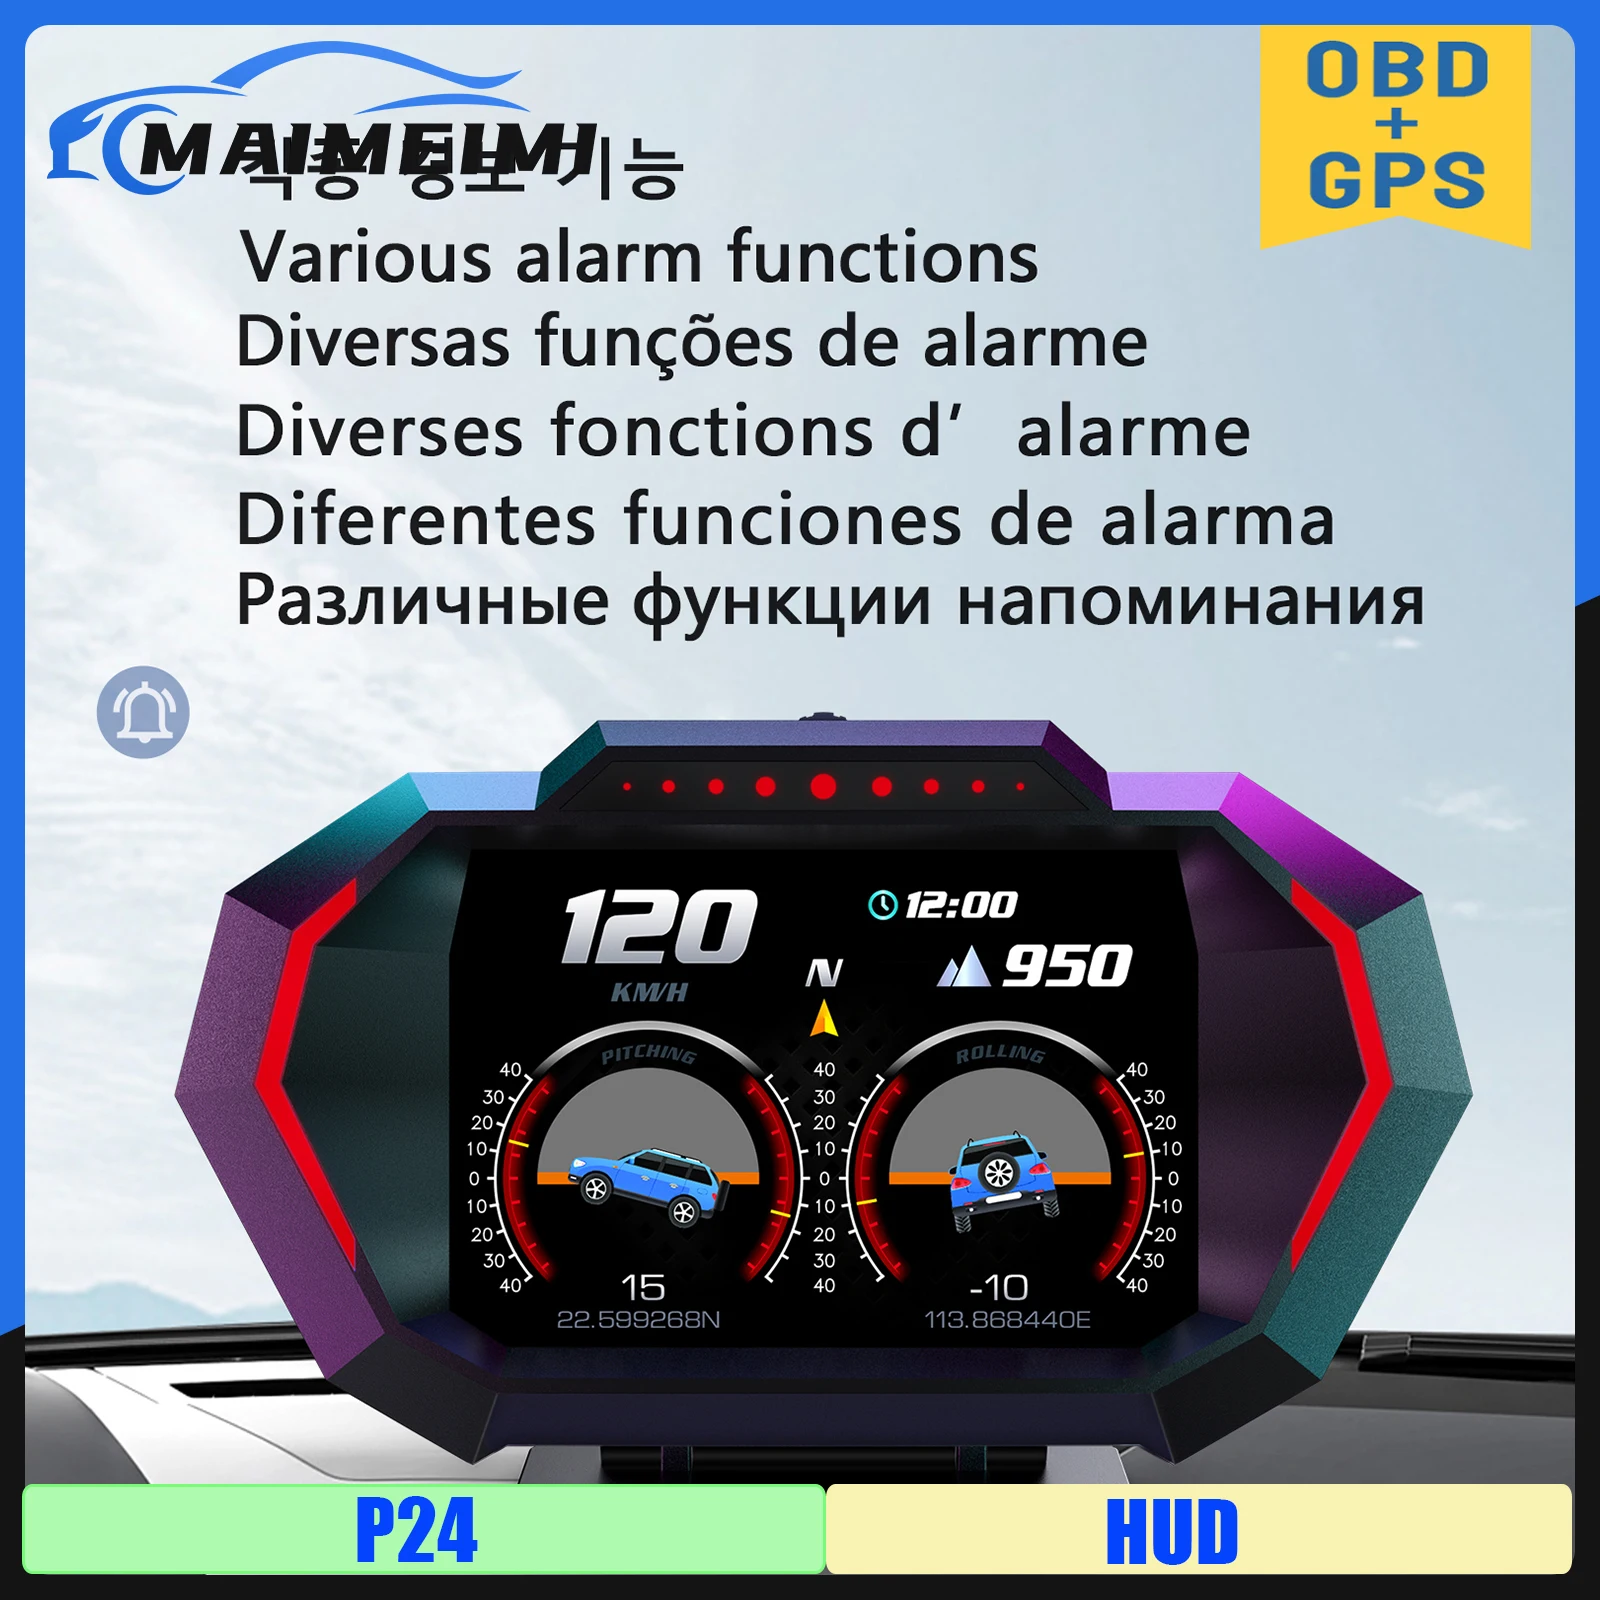 

Автомобильный дисплей на борту автомобиля P24 HUD OBD + GPS, цифровой измеритель расхода топлива, спидометр, температура воды, напряжение